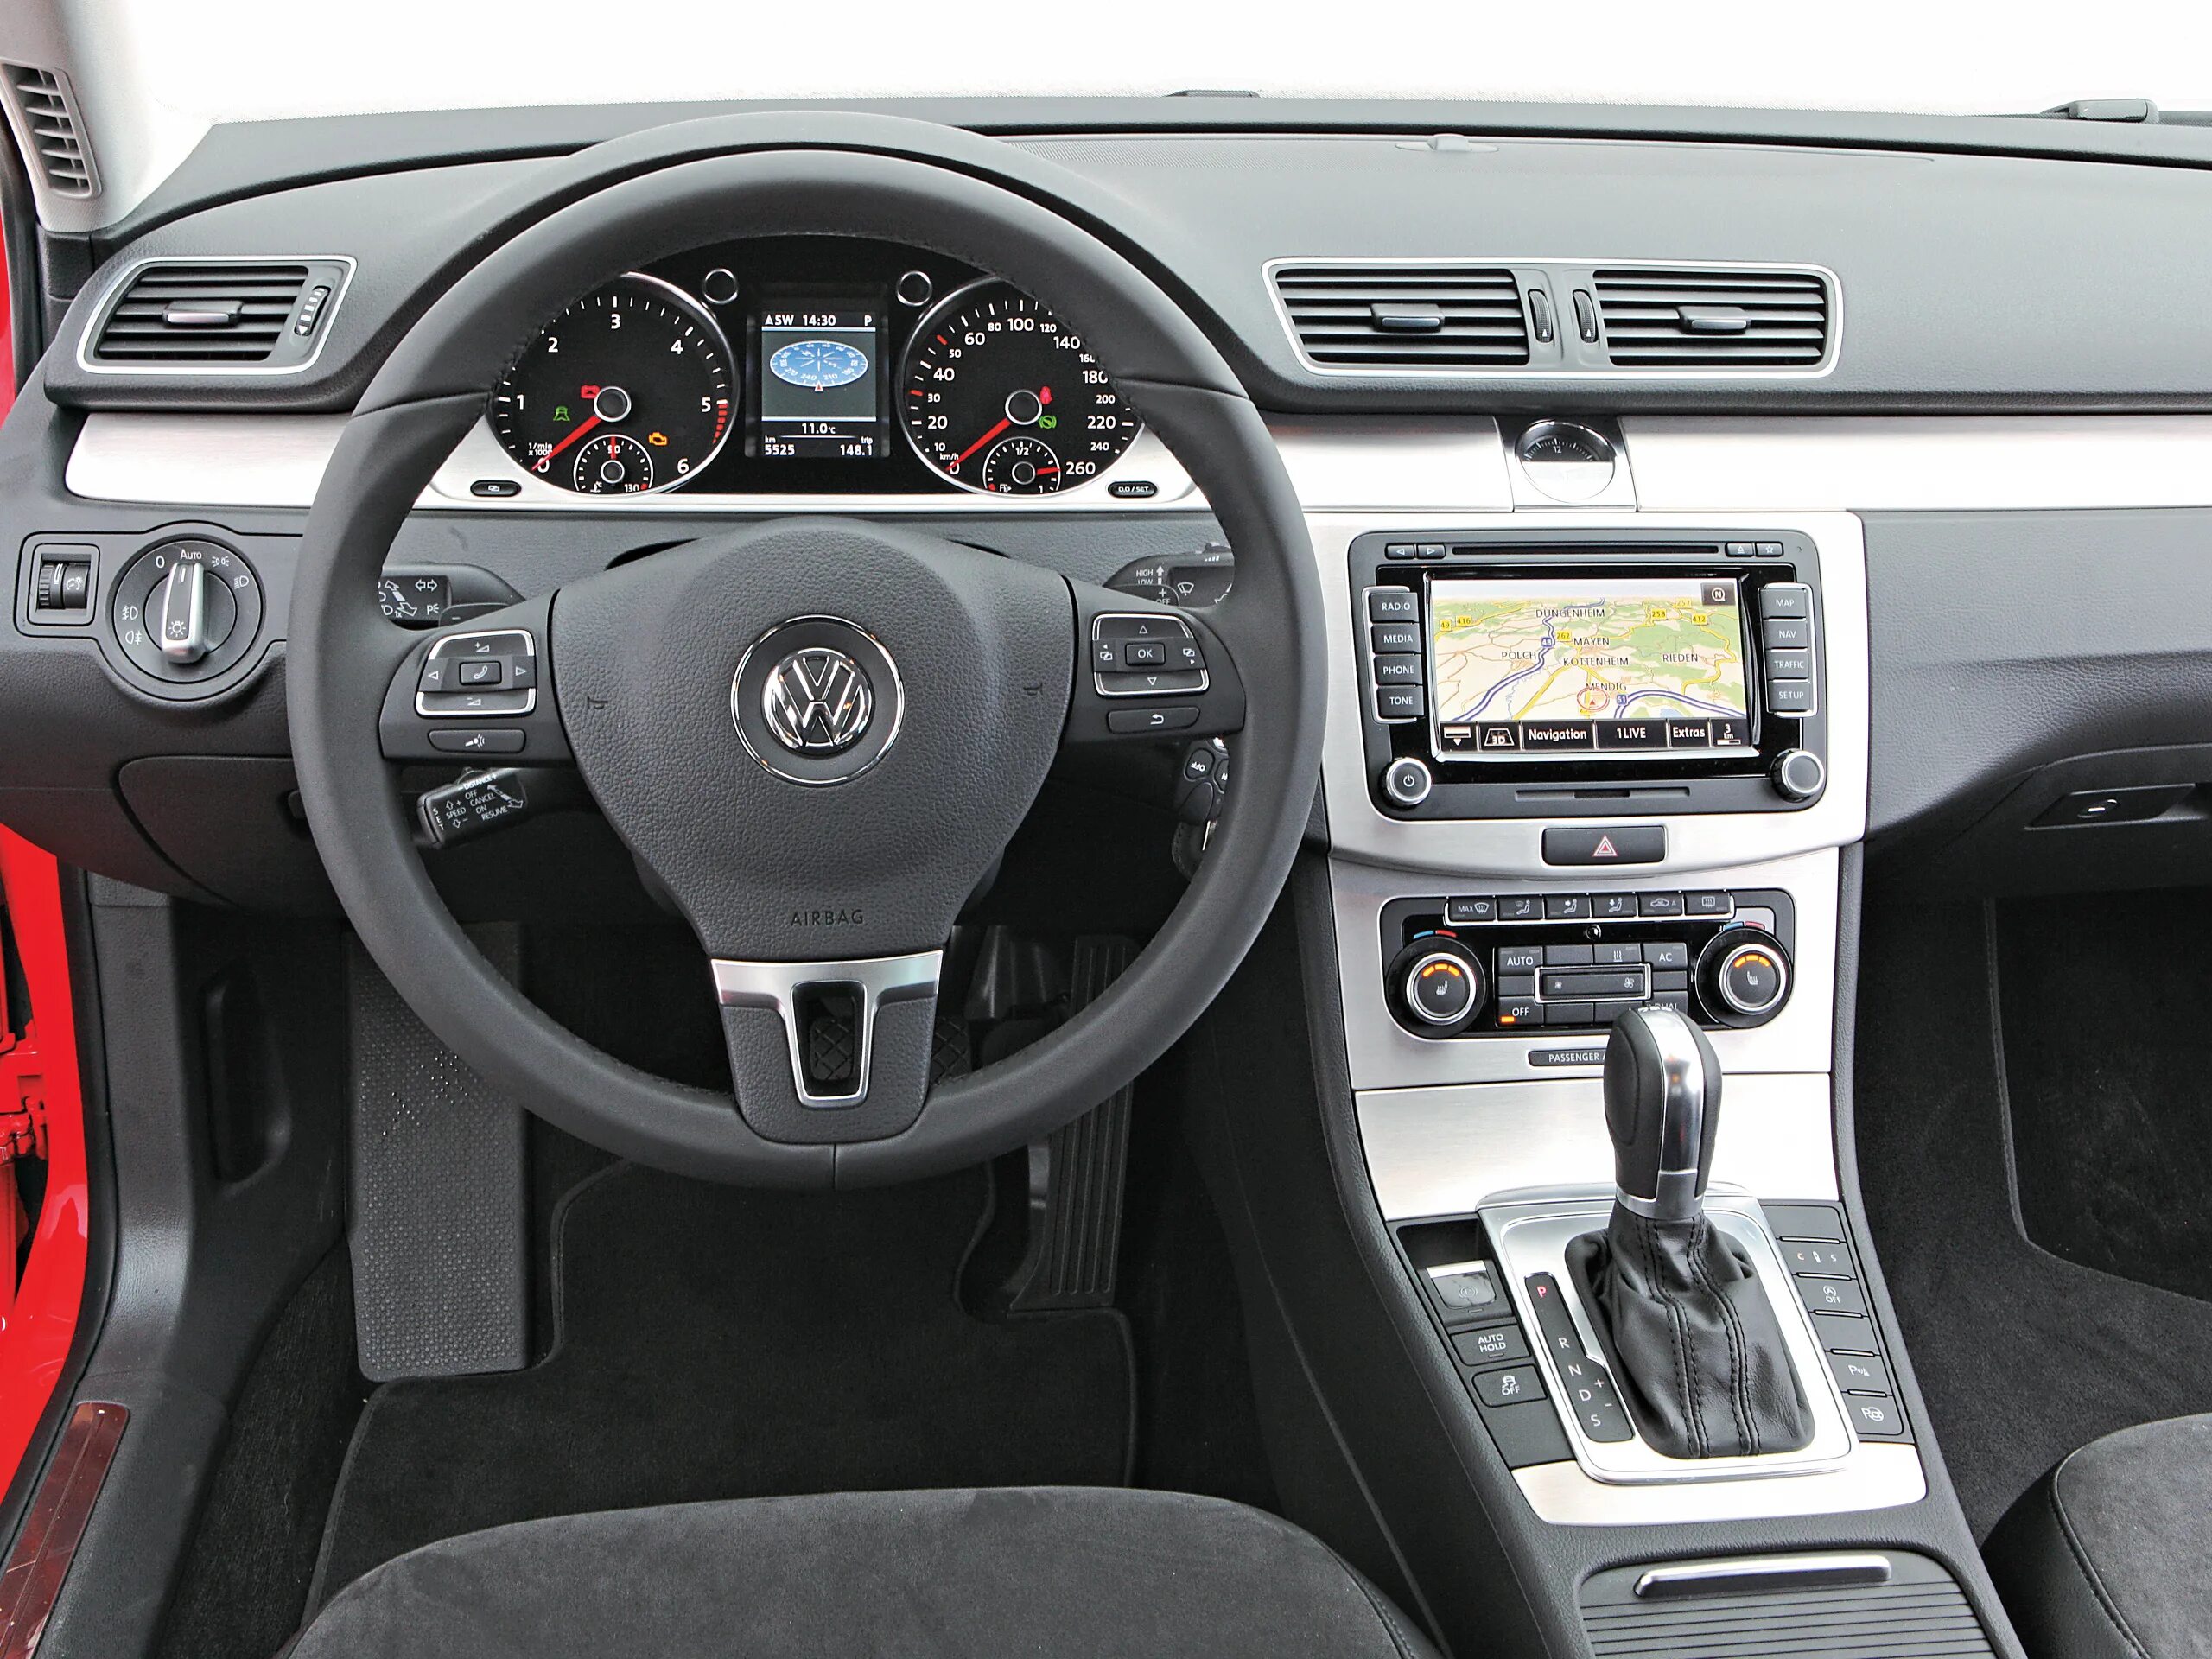 Volkswagen Passat b6 2.0 TDI 2009. Volkswagen Passat b7 TDI. Фольксваген Пассат б6 2.0 салон. Пассат б6 салон.